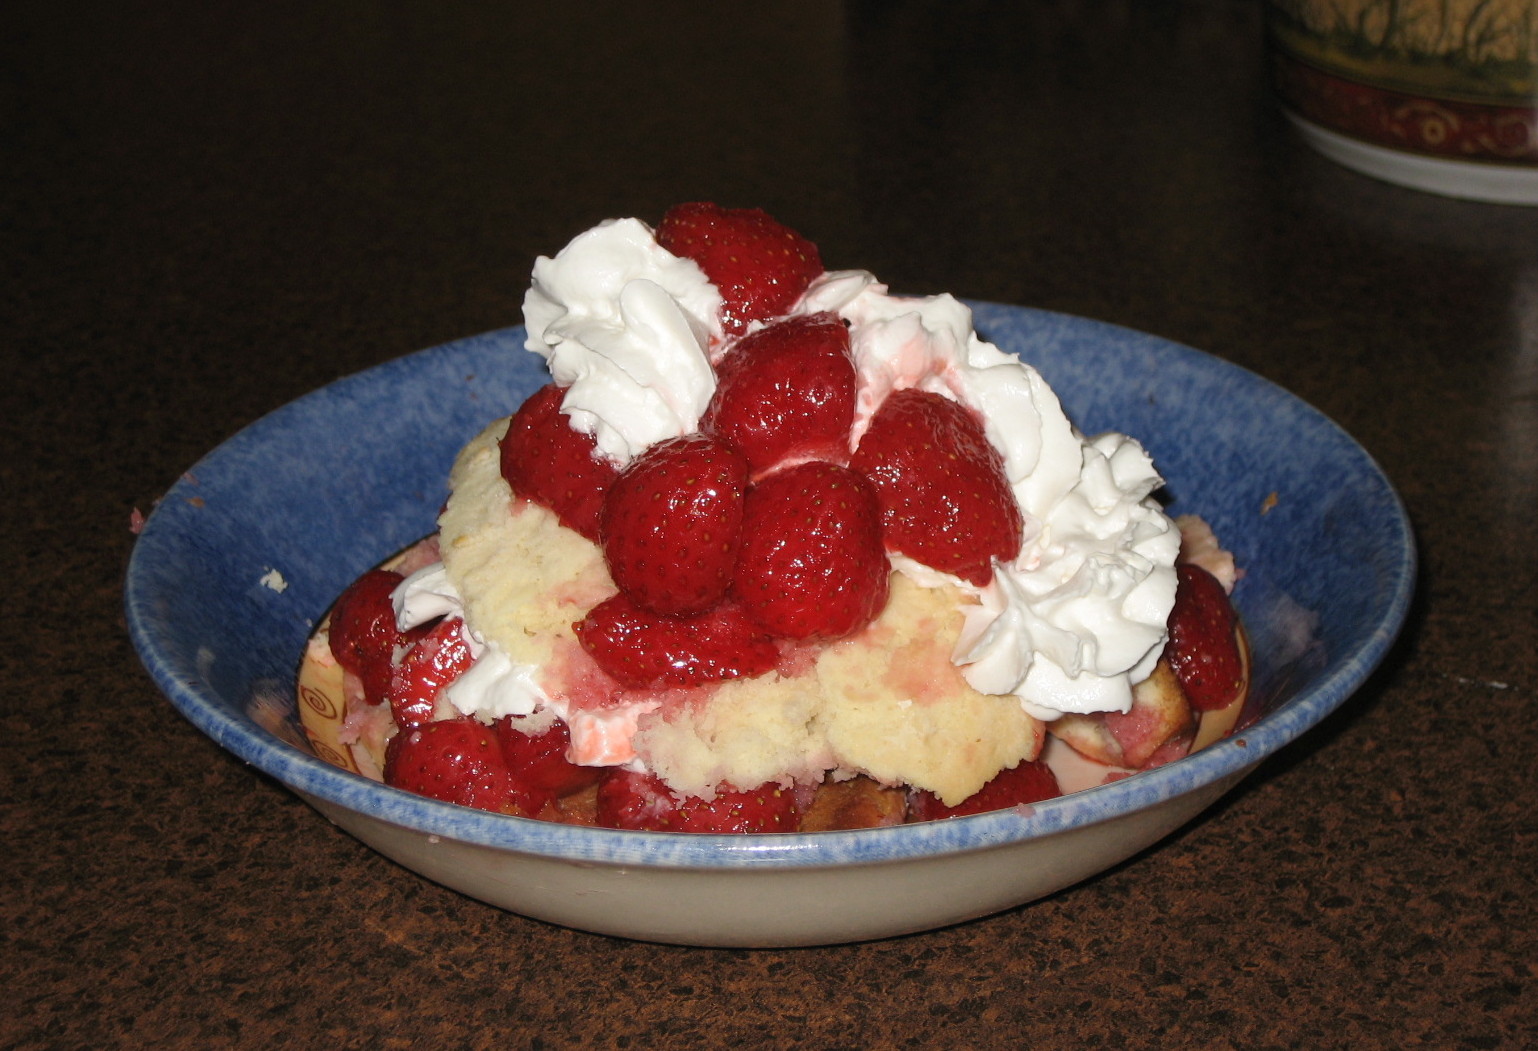 [strawberry+shortcake.jpg]